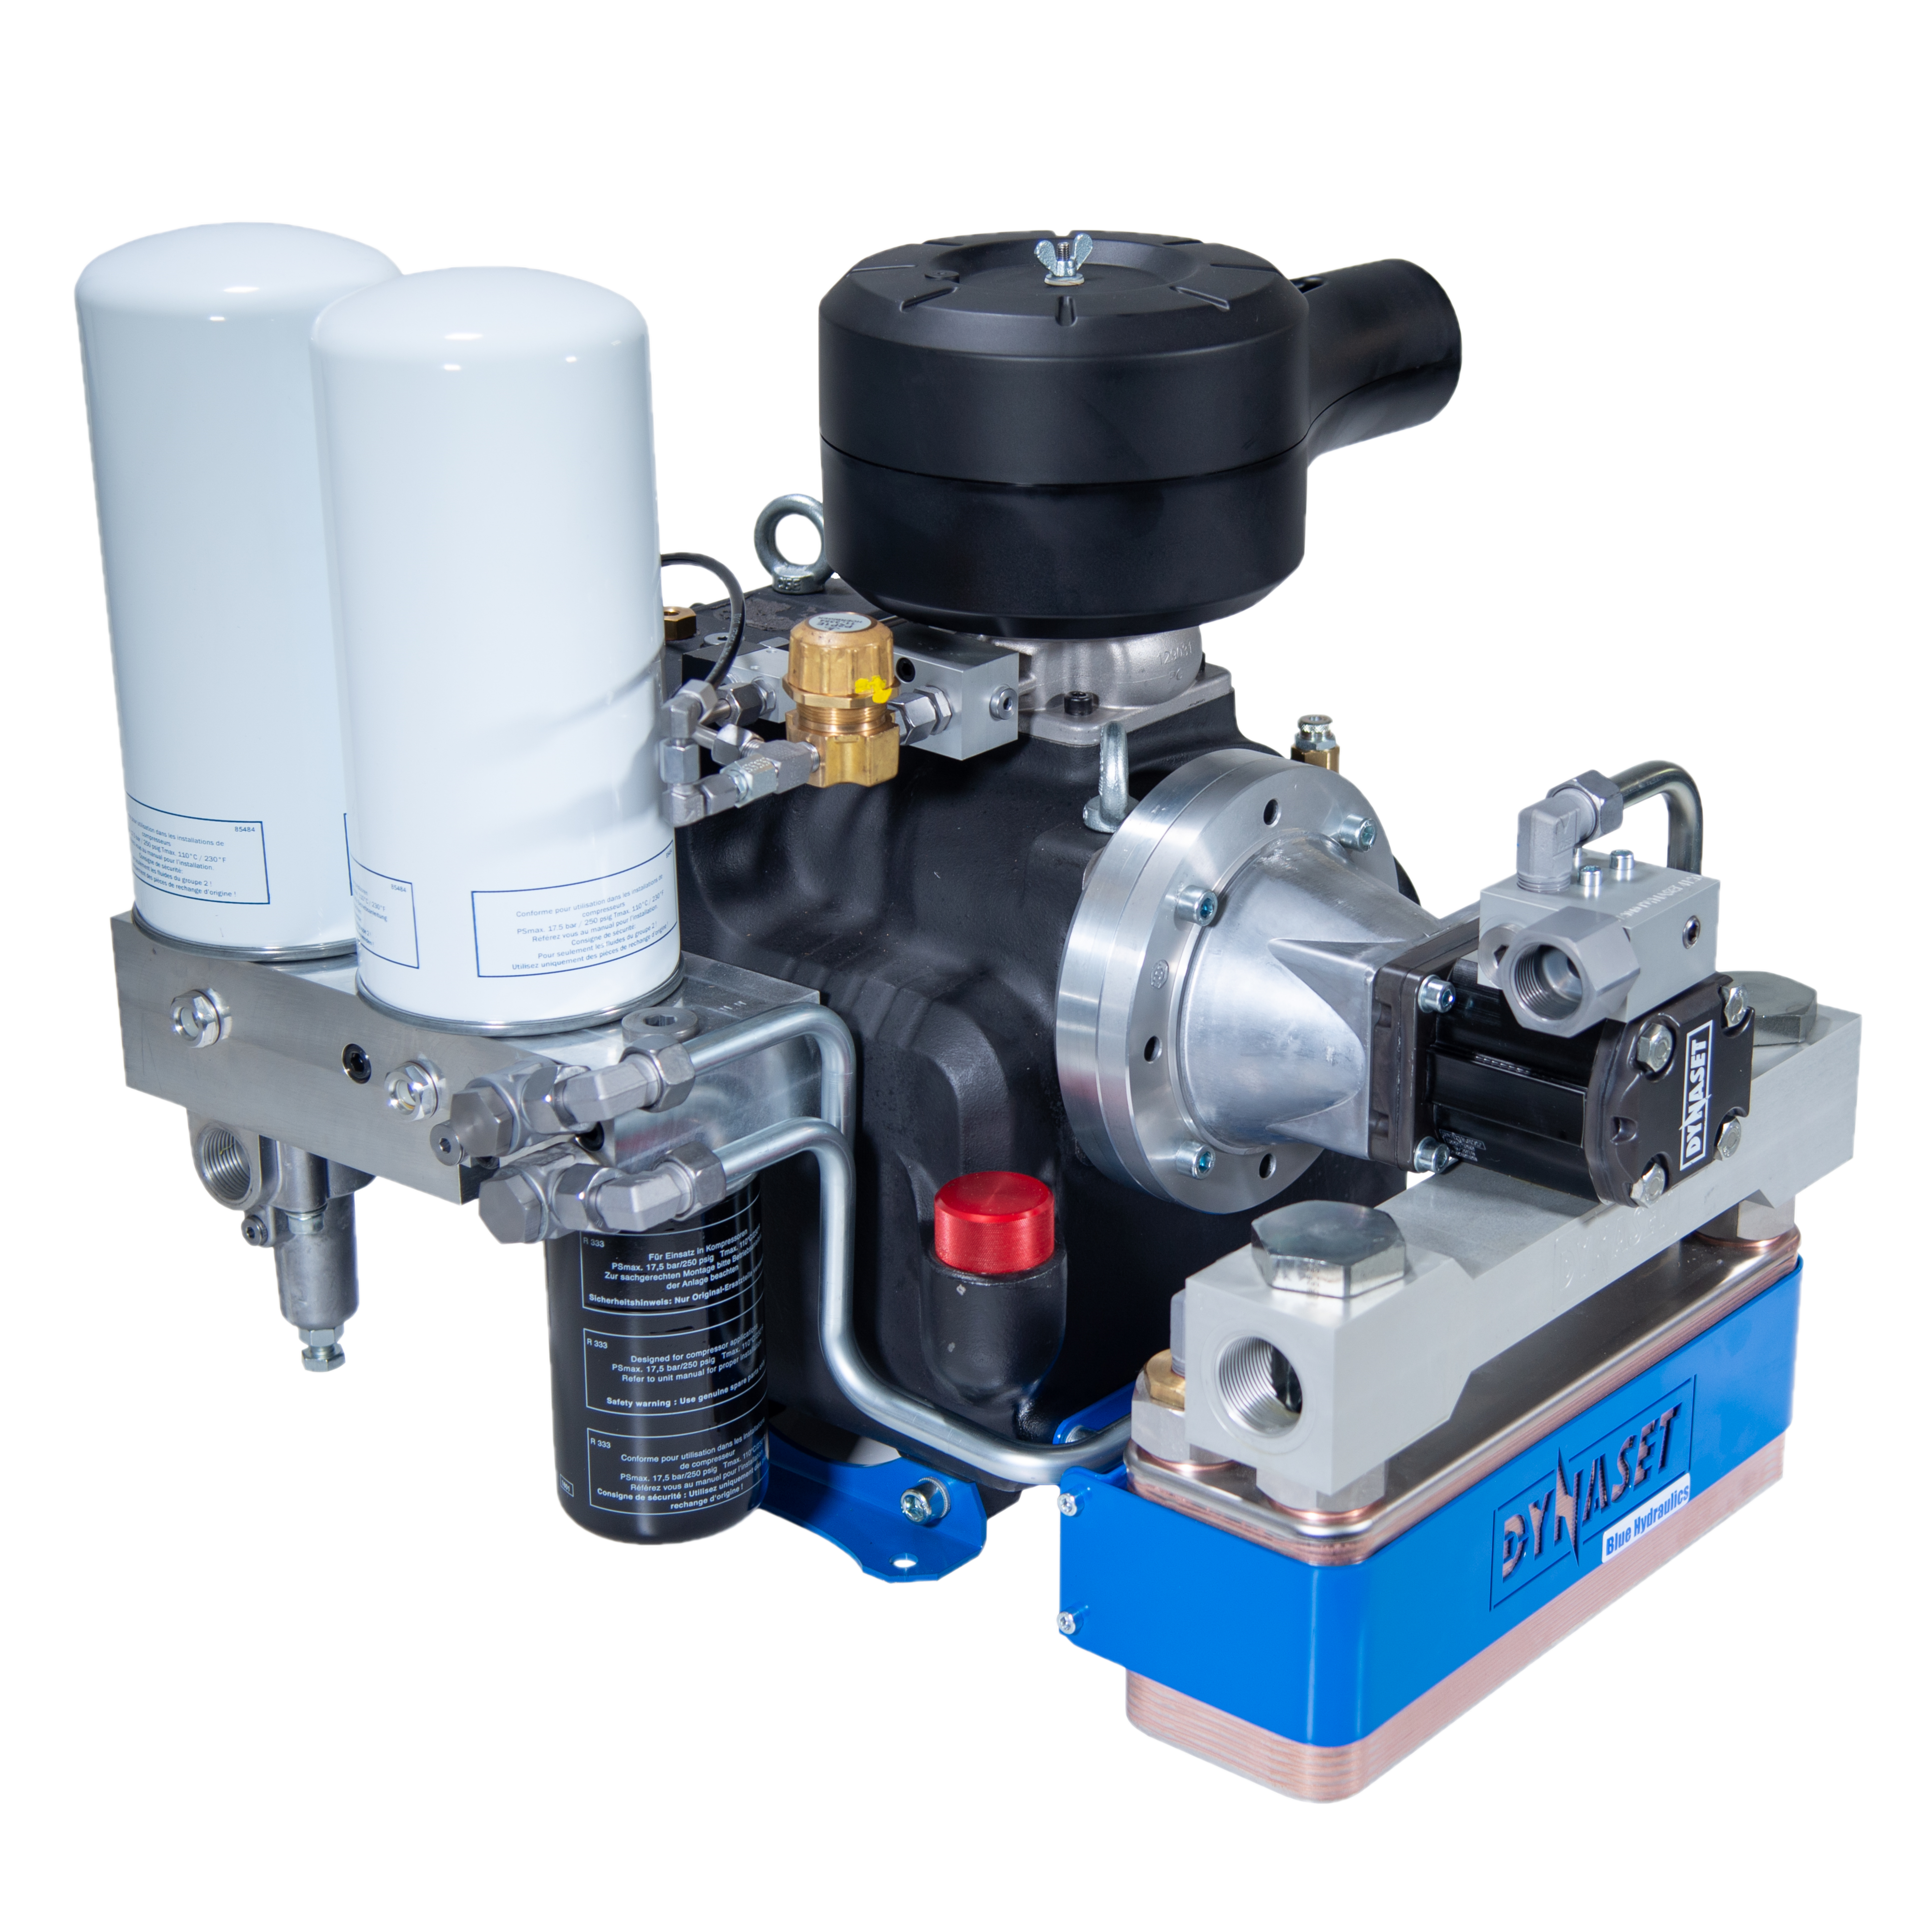 HKR5000 - Hydraulisch angetriebener Druckluft-Schraubenkompressor 5.000 L/min. bei max. 10 bar (145PSI)